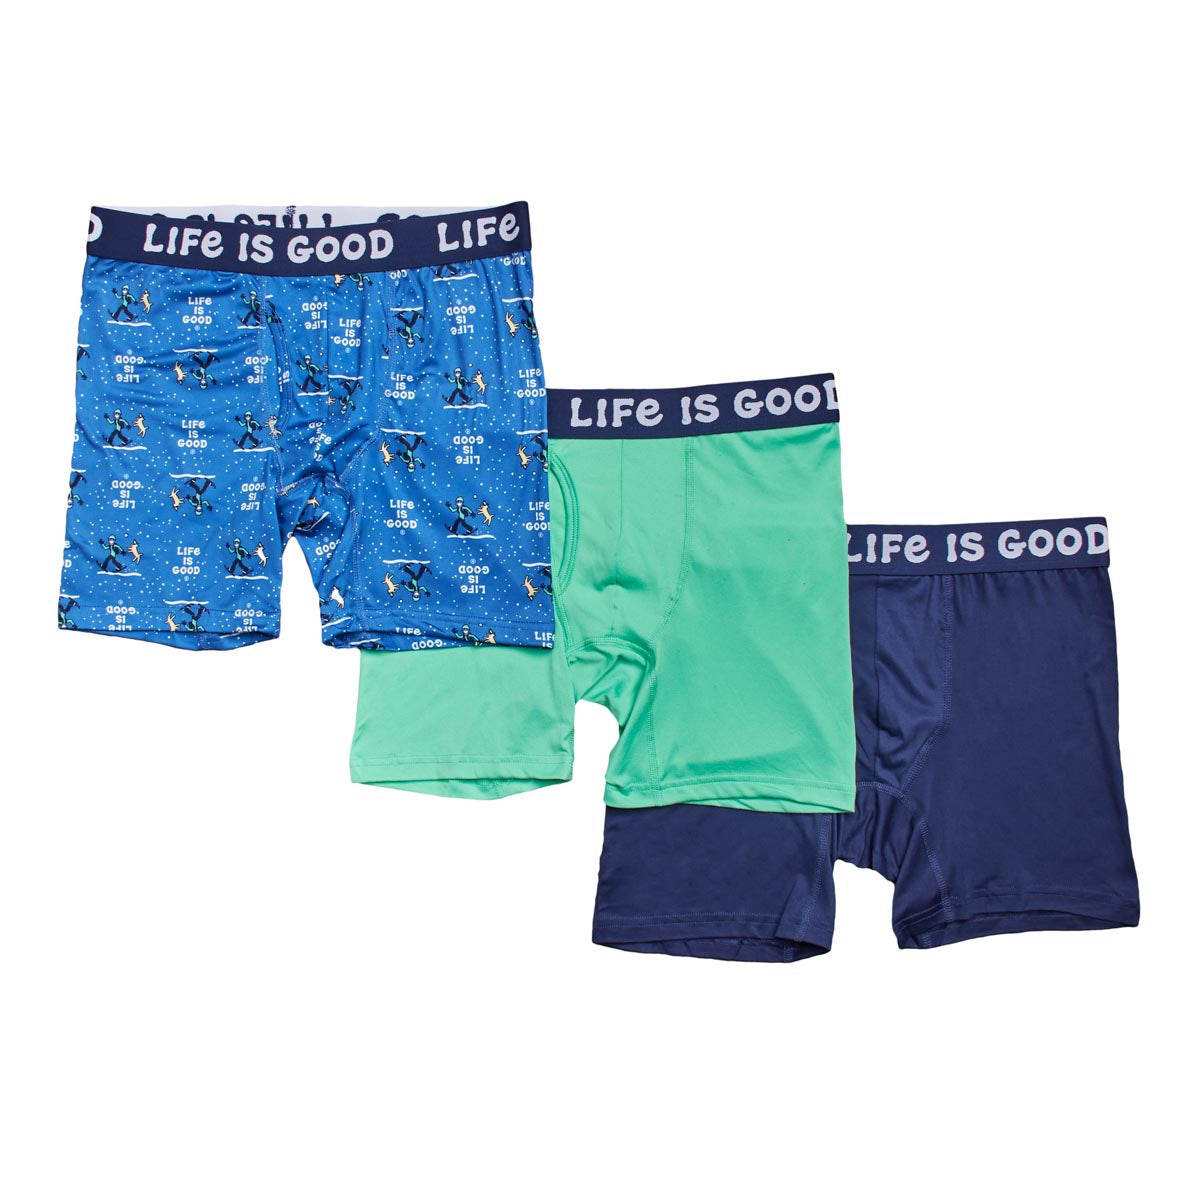 Life is Good Men's Underwear - Super Soft Boxer Briefs (6 Pack